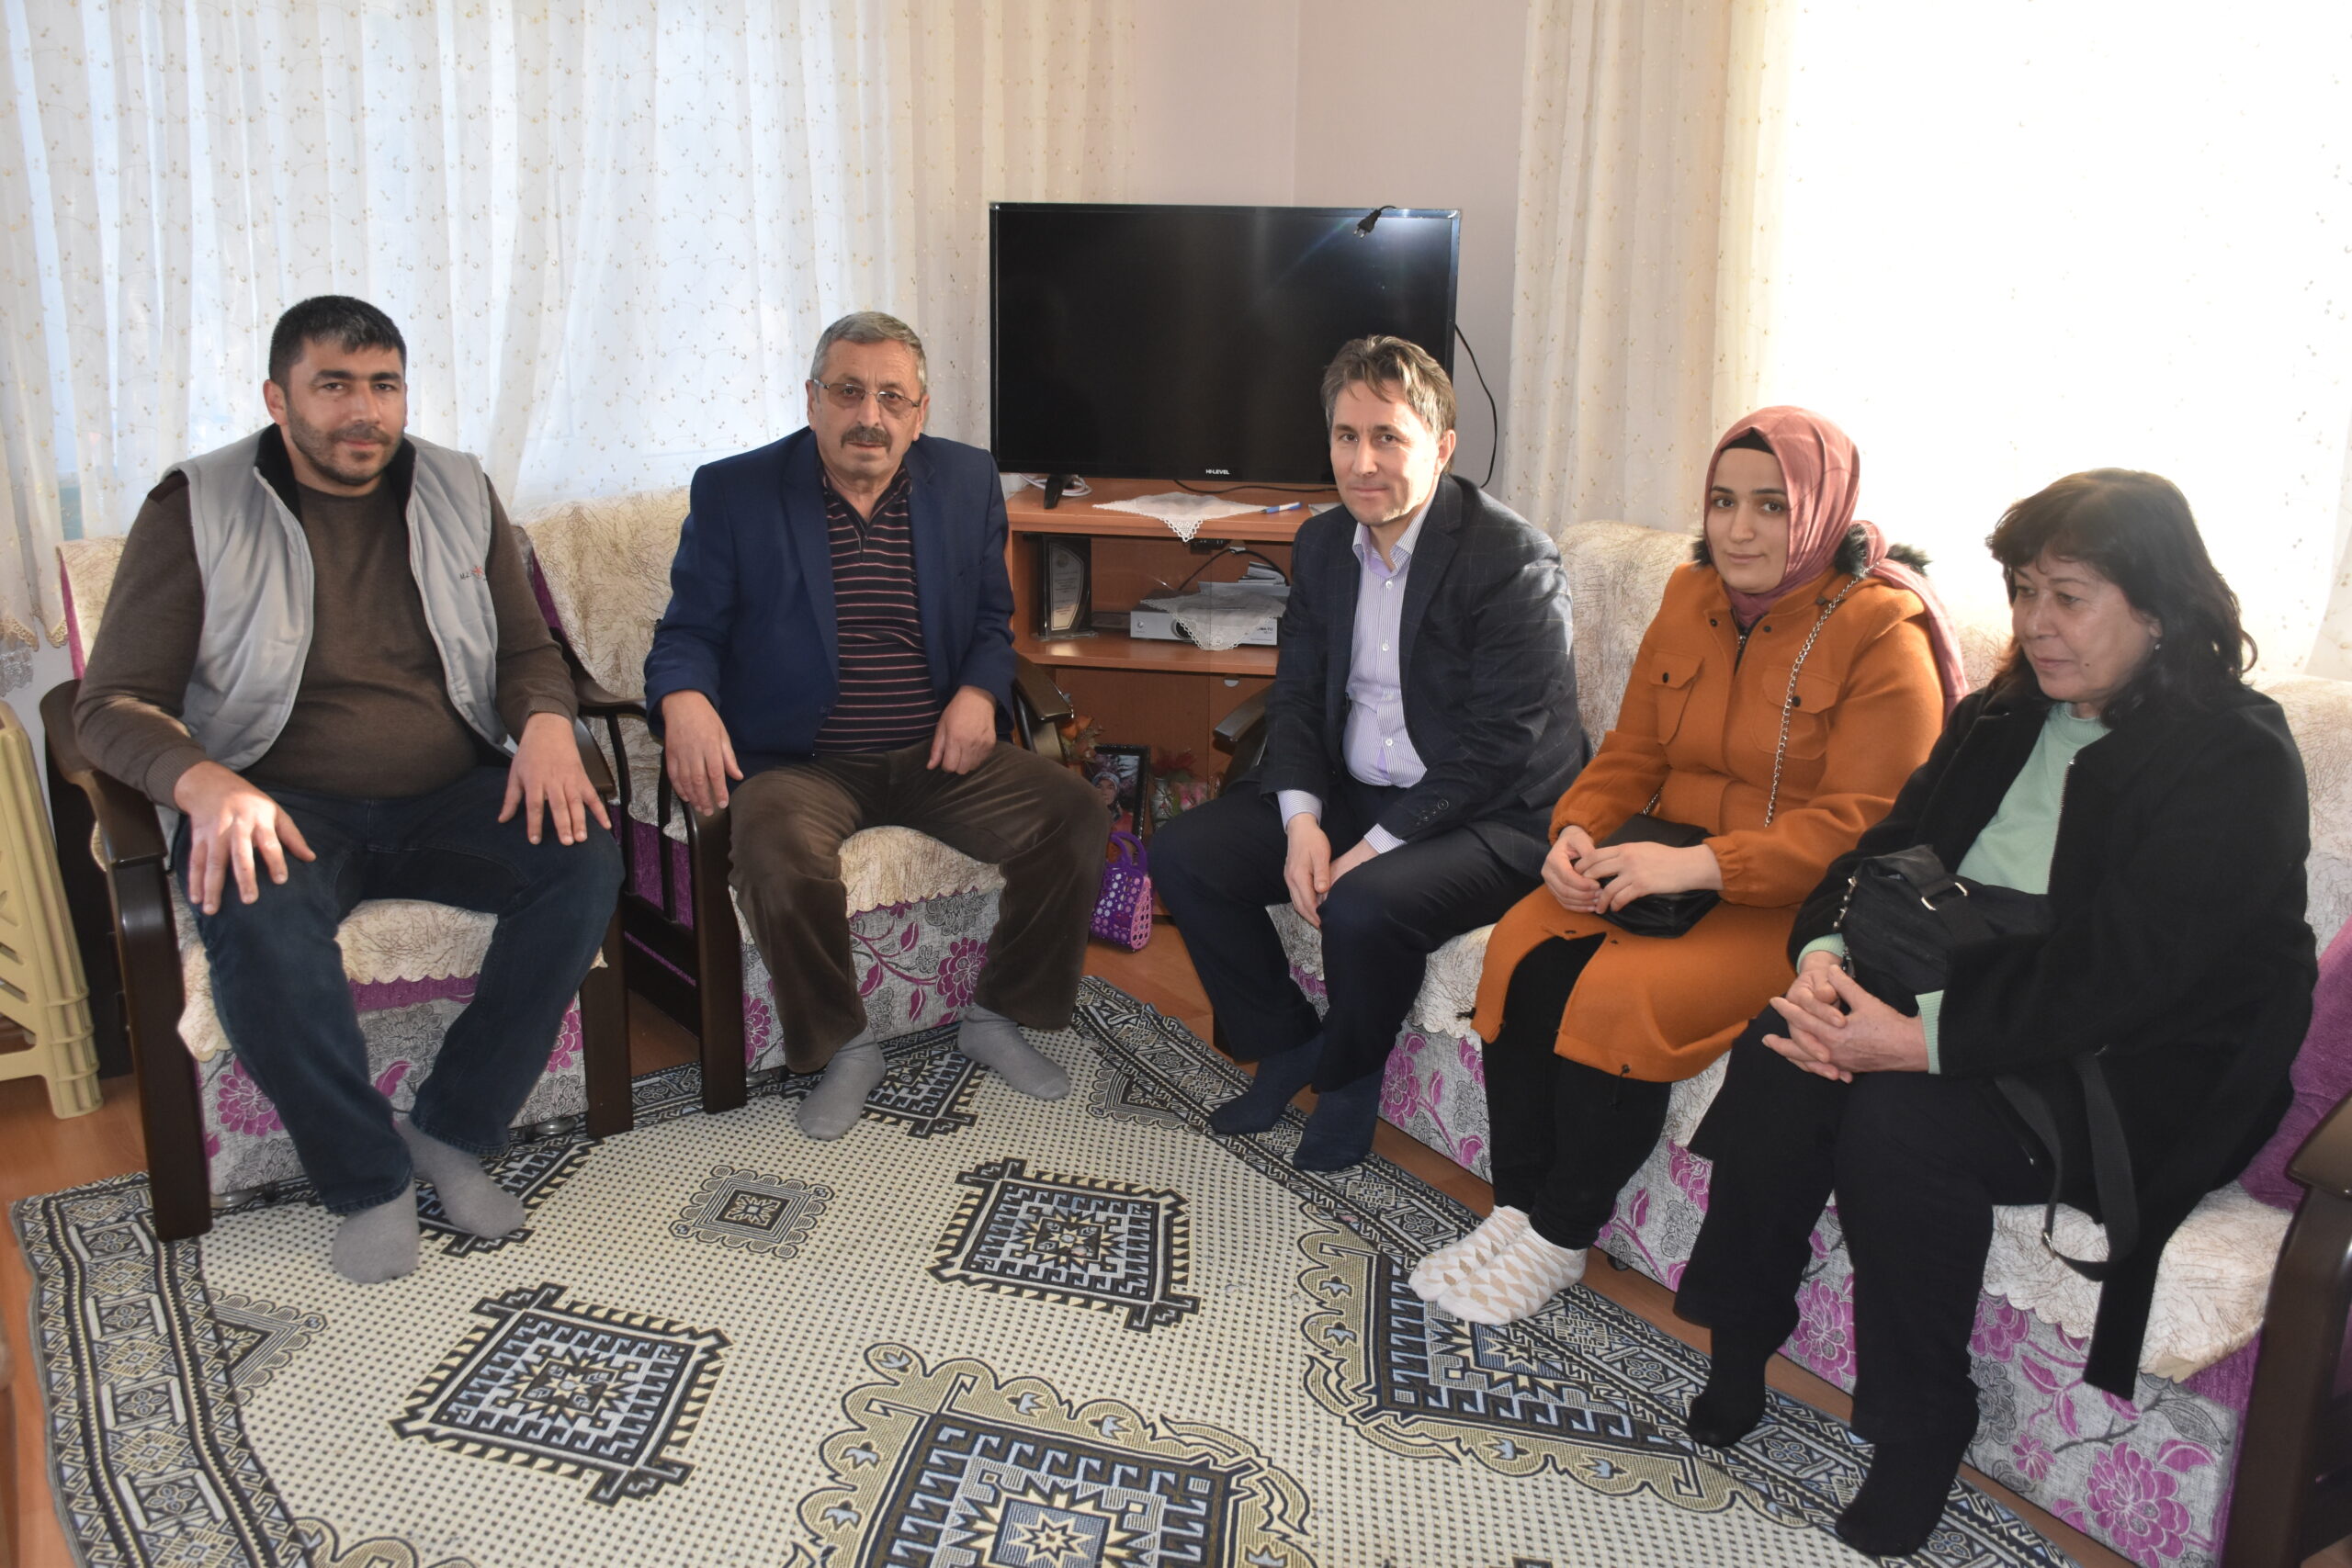 Belediye Başkanımız Hüseyin Kıyma, eşi Nezahat Kıyma ve Belediye Meclis üyemiz Muhteber Çevik, ilçemizde ağırladığımız depremzede ailelerimize geçmiş olsun ziyaretinde bulundular.